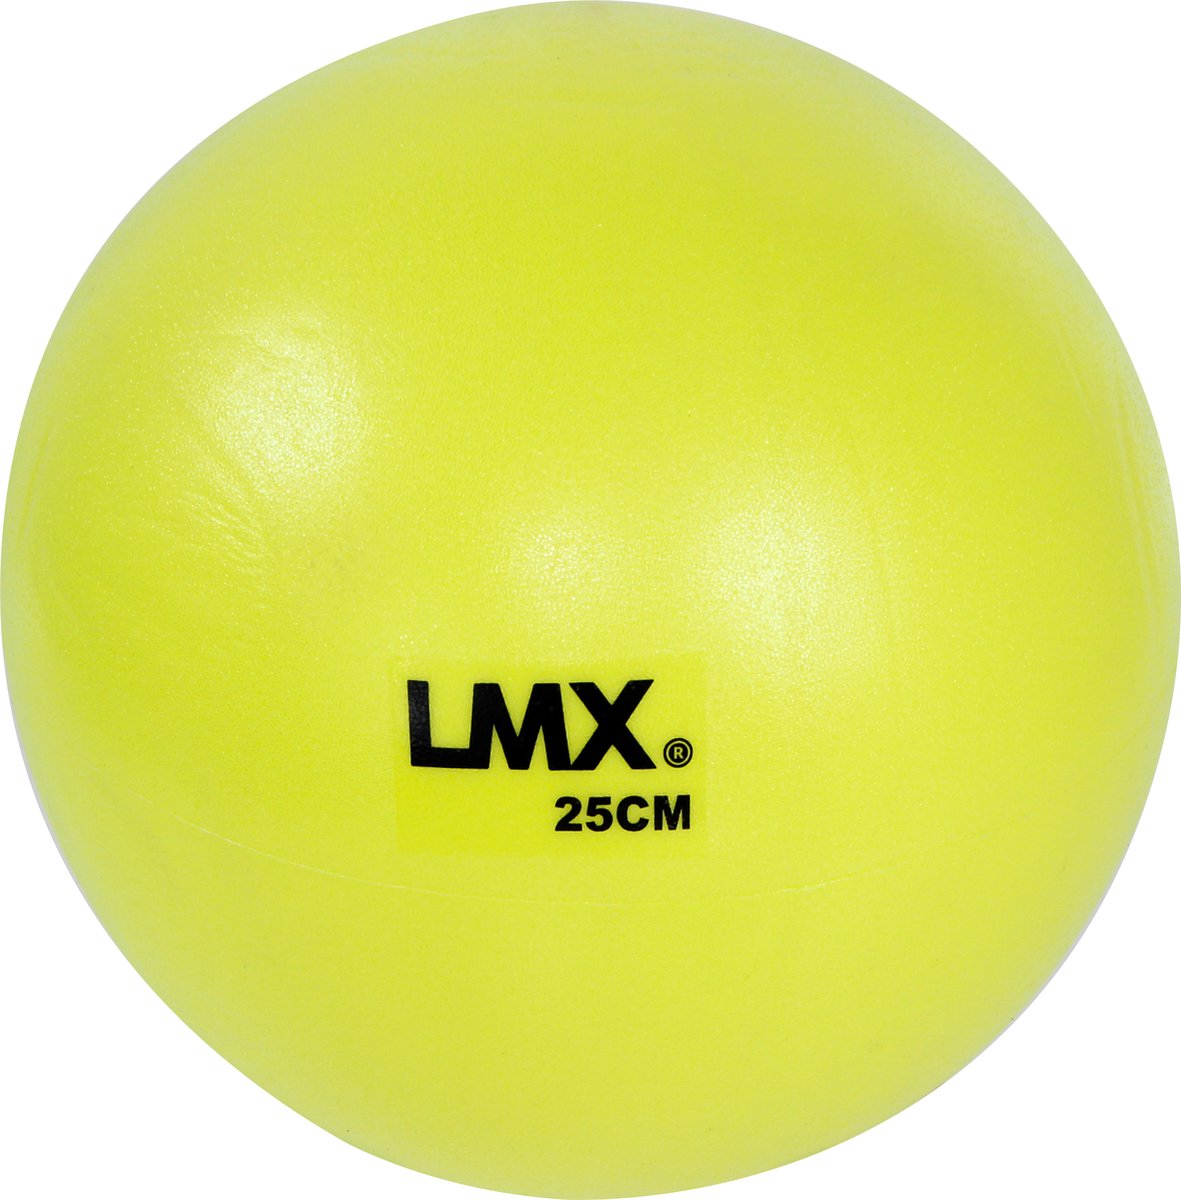 LMX. Pilates ball | Ø 25cm | Geel